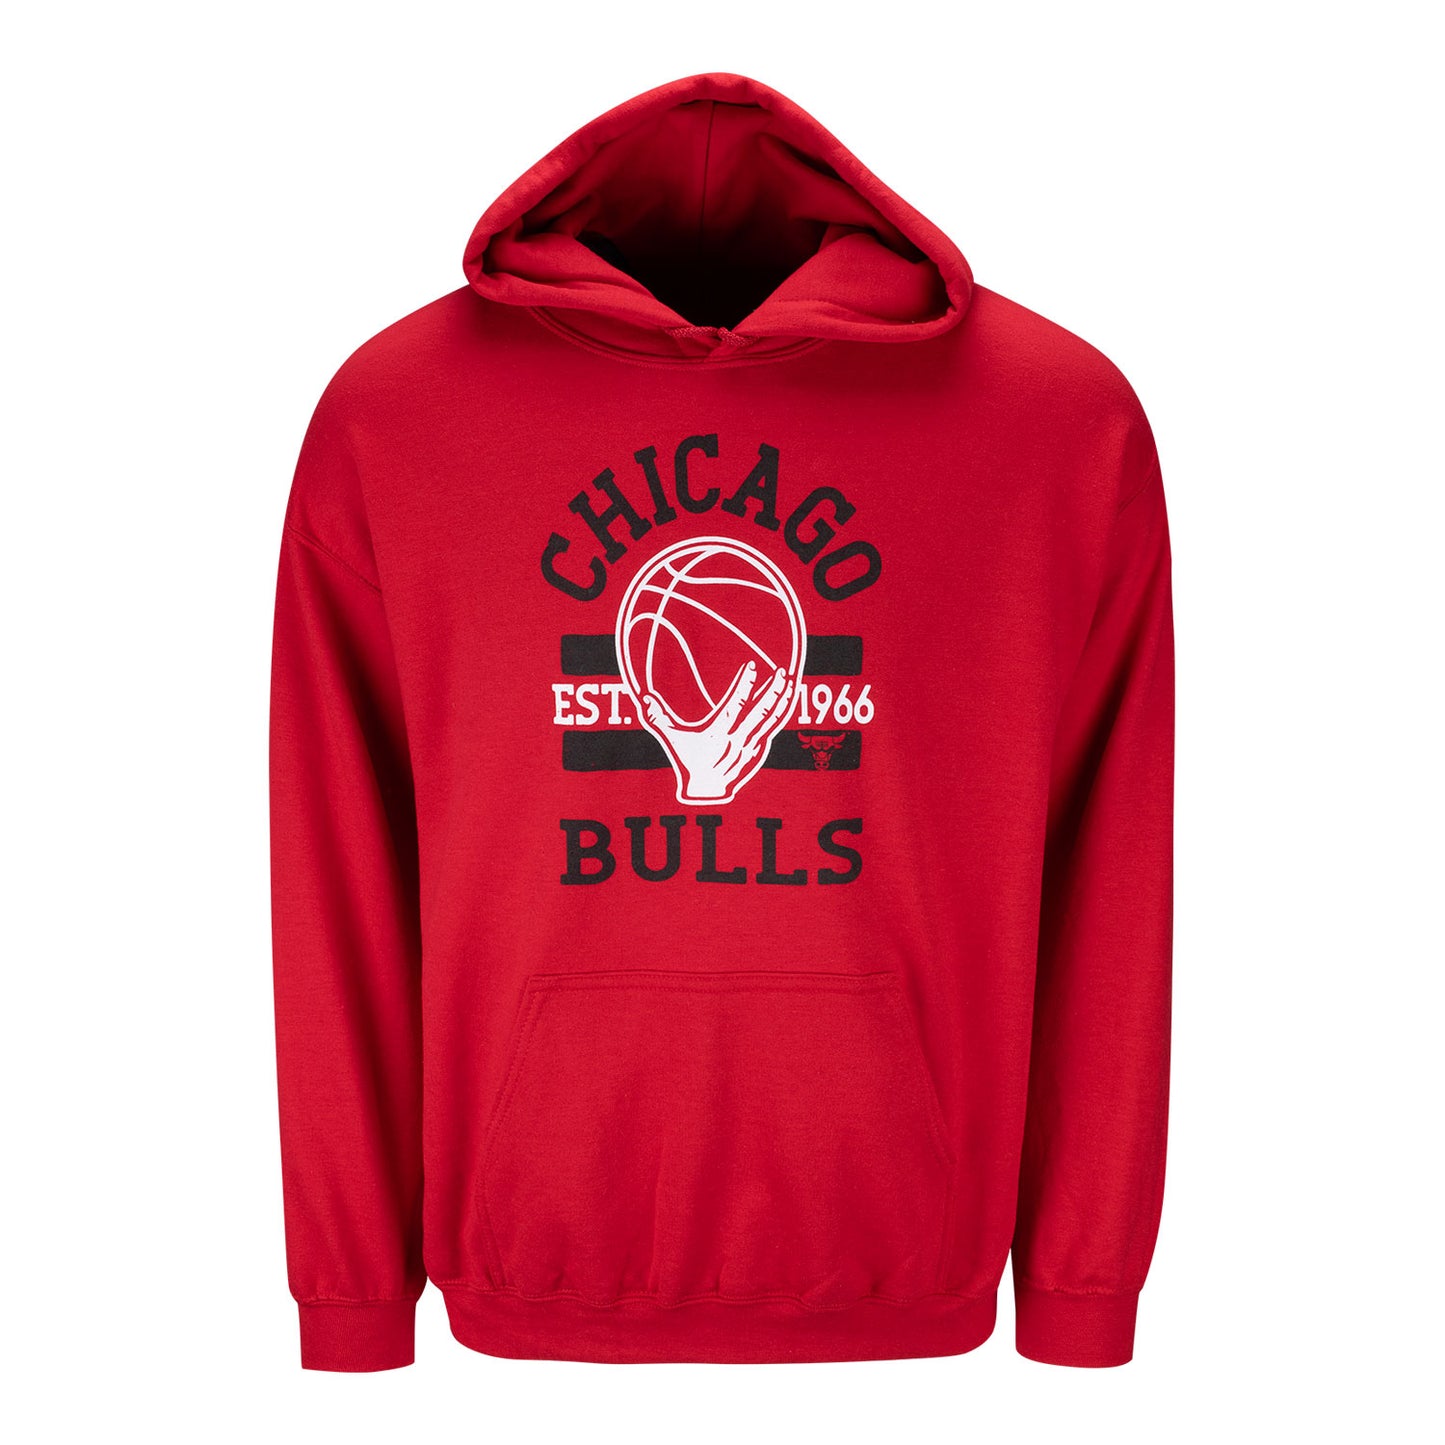 Chicago Bulls 1966 IOG Sweatshirt in red - front view